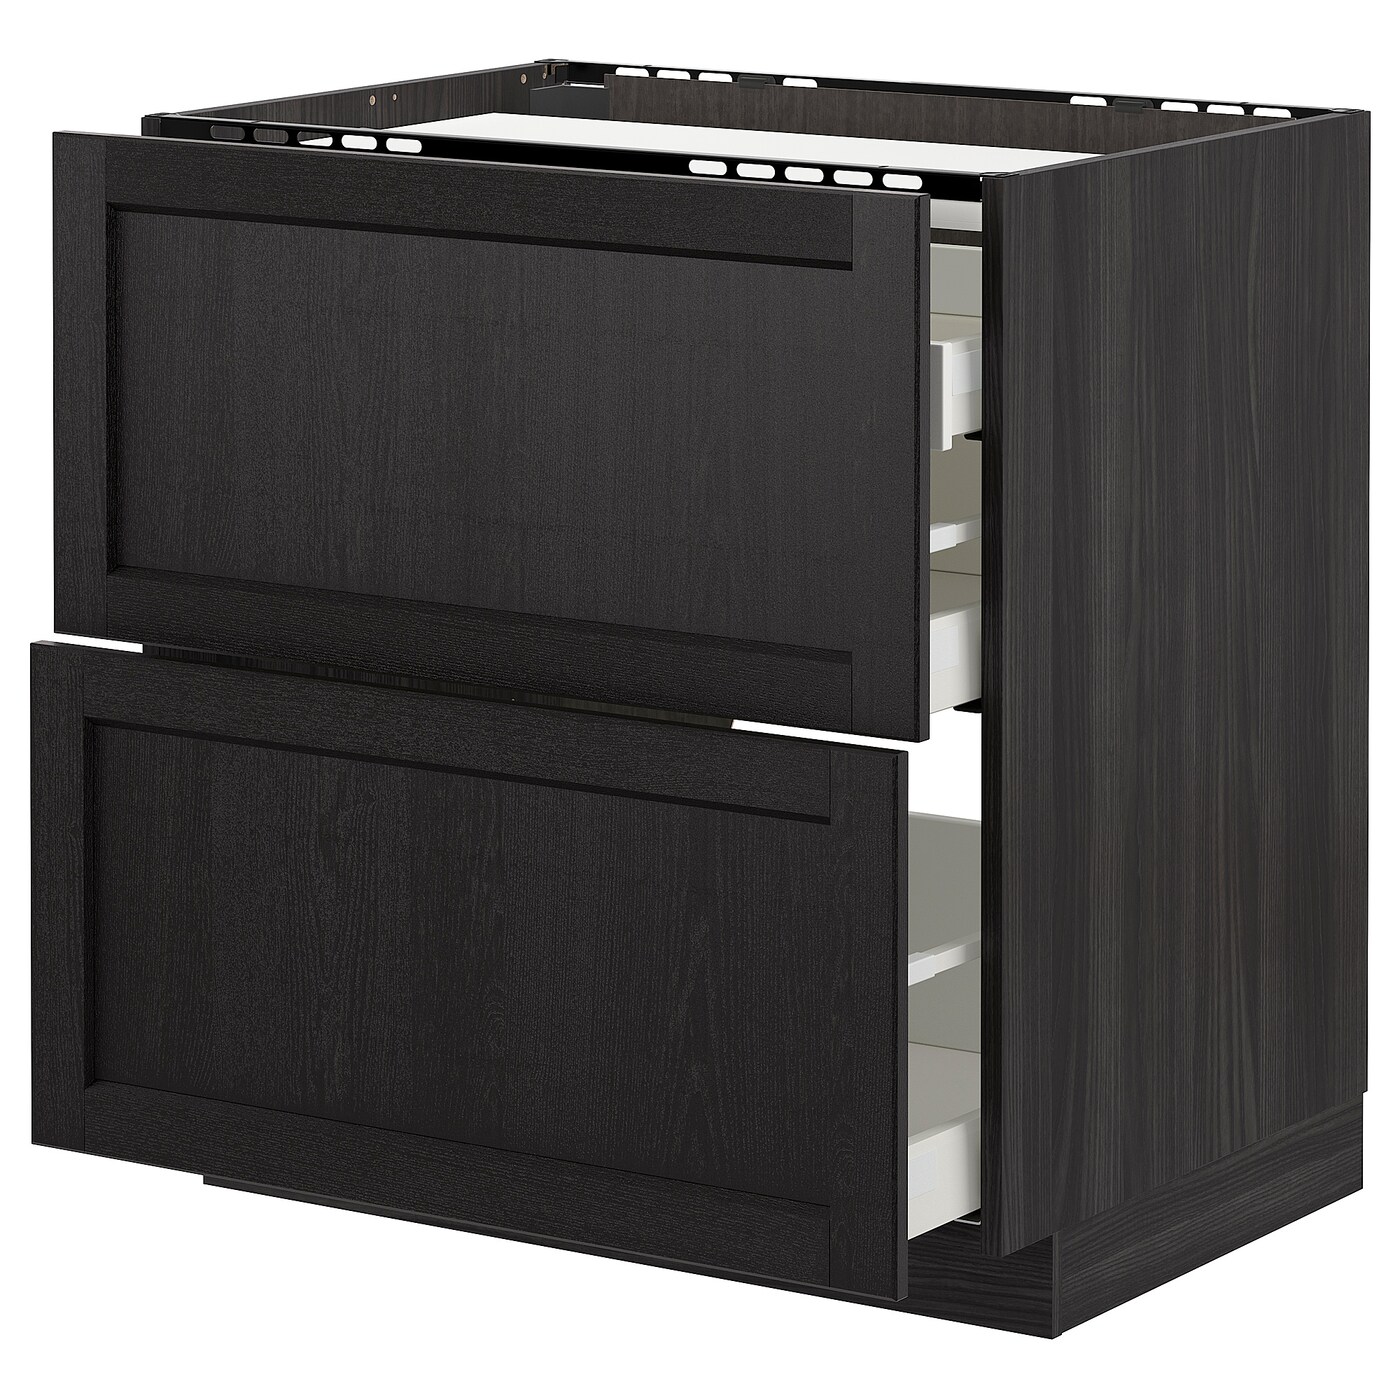 Напольный шкаф  - IKEA METOD MAXIMERA, 88x61,8x80см, черный, МЕТОД МАКСИМЕРА ИКЕА